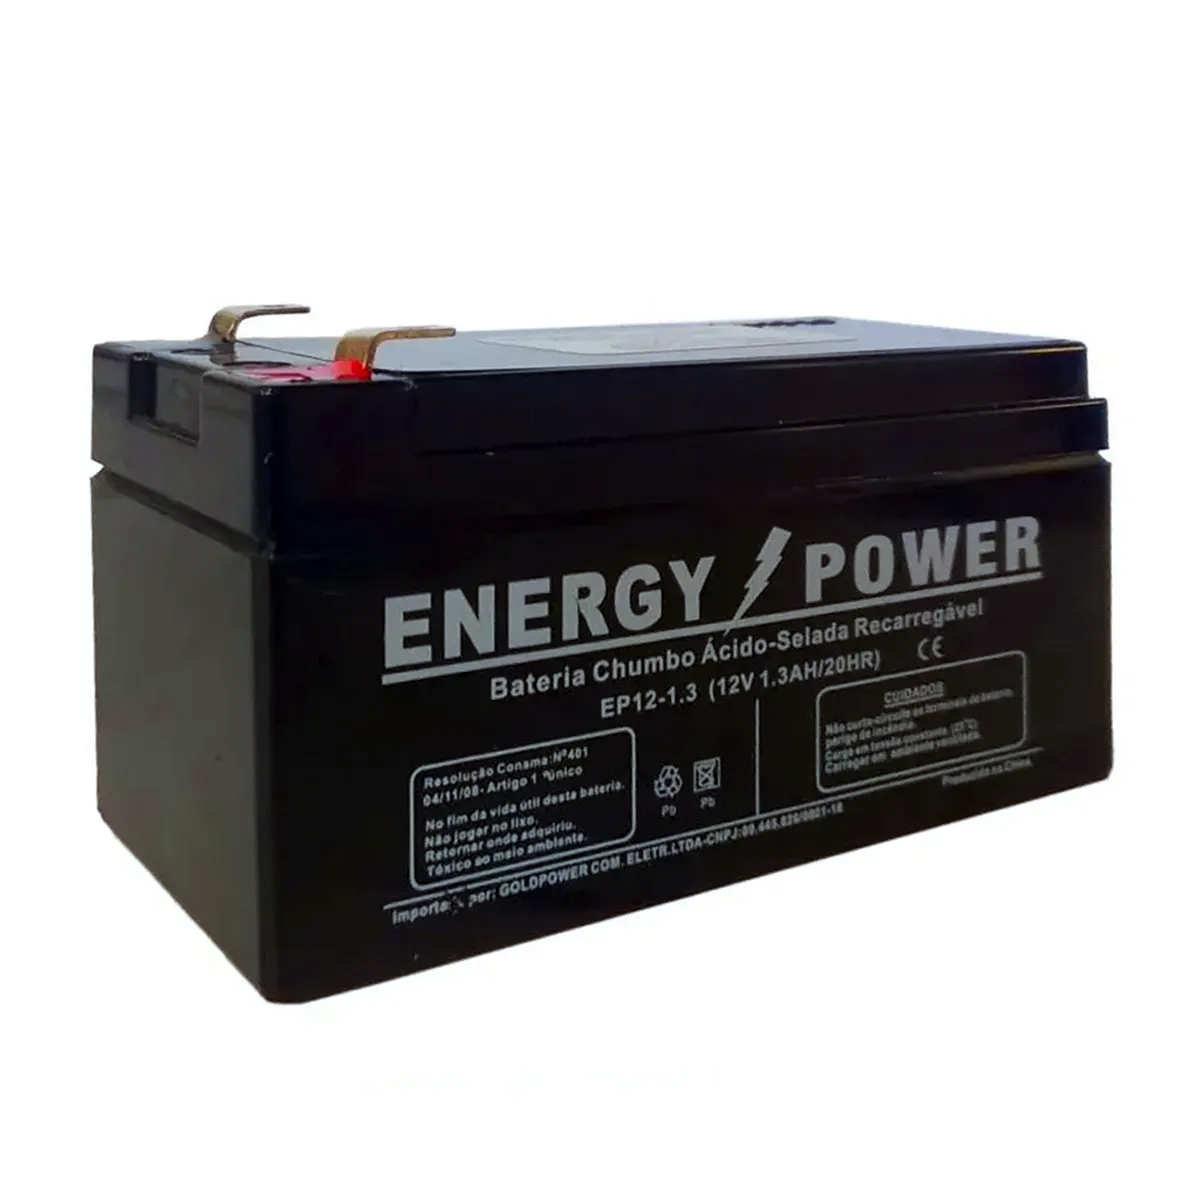 Bateria estacionária 12v 1.3ah Energy Power